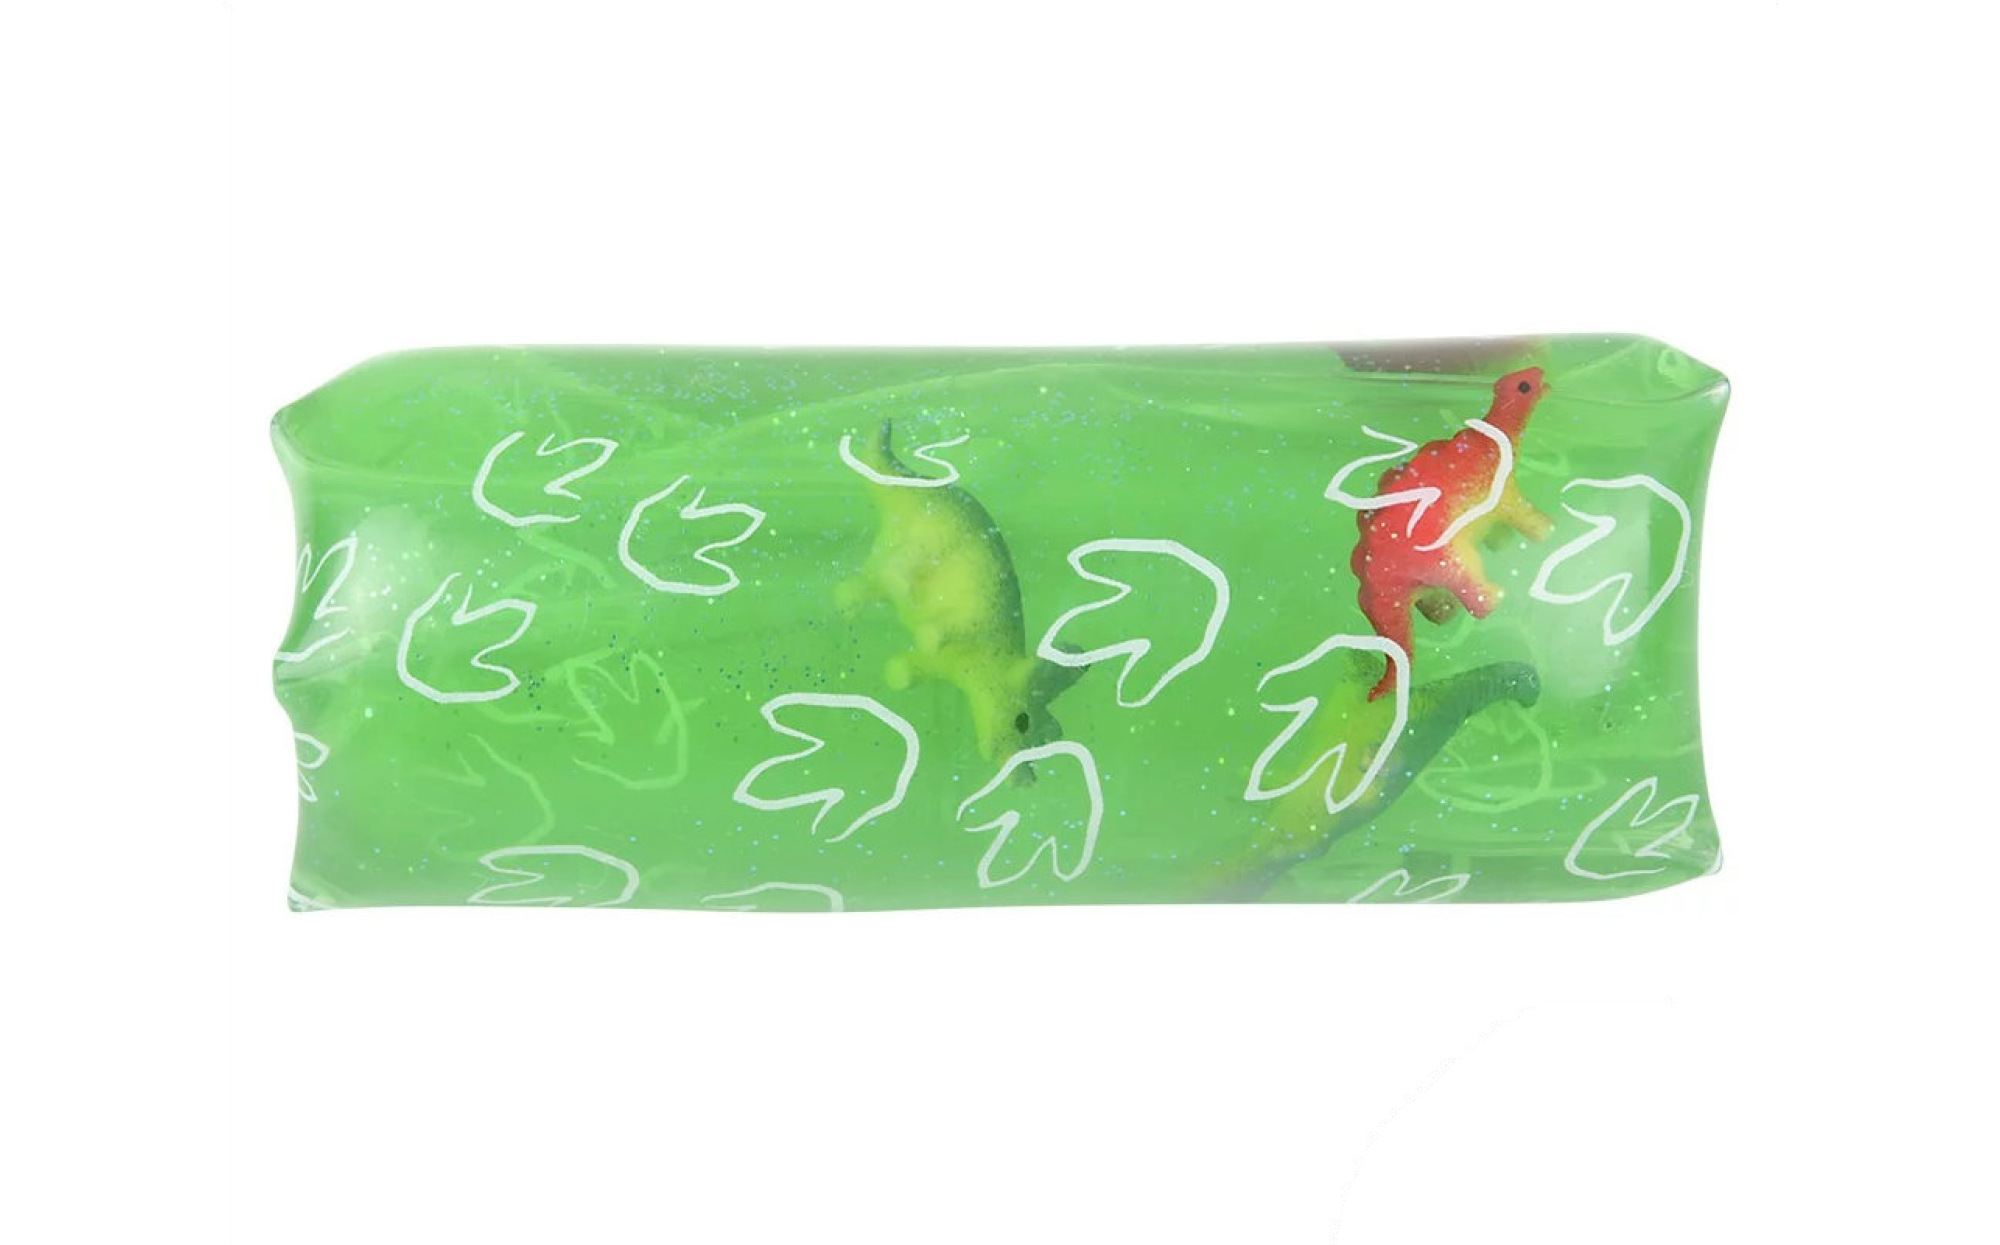 Jumbo Sealife Animal Water Filled Tube Snake Stress Toy - Squishy